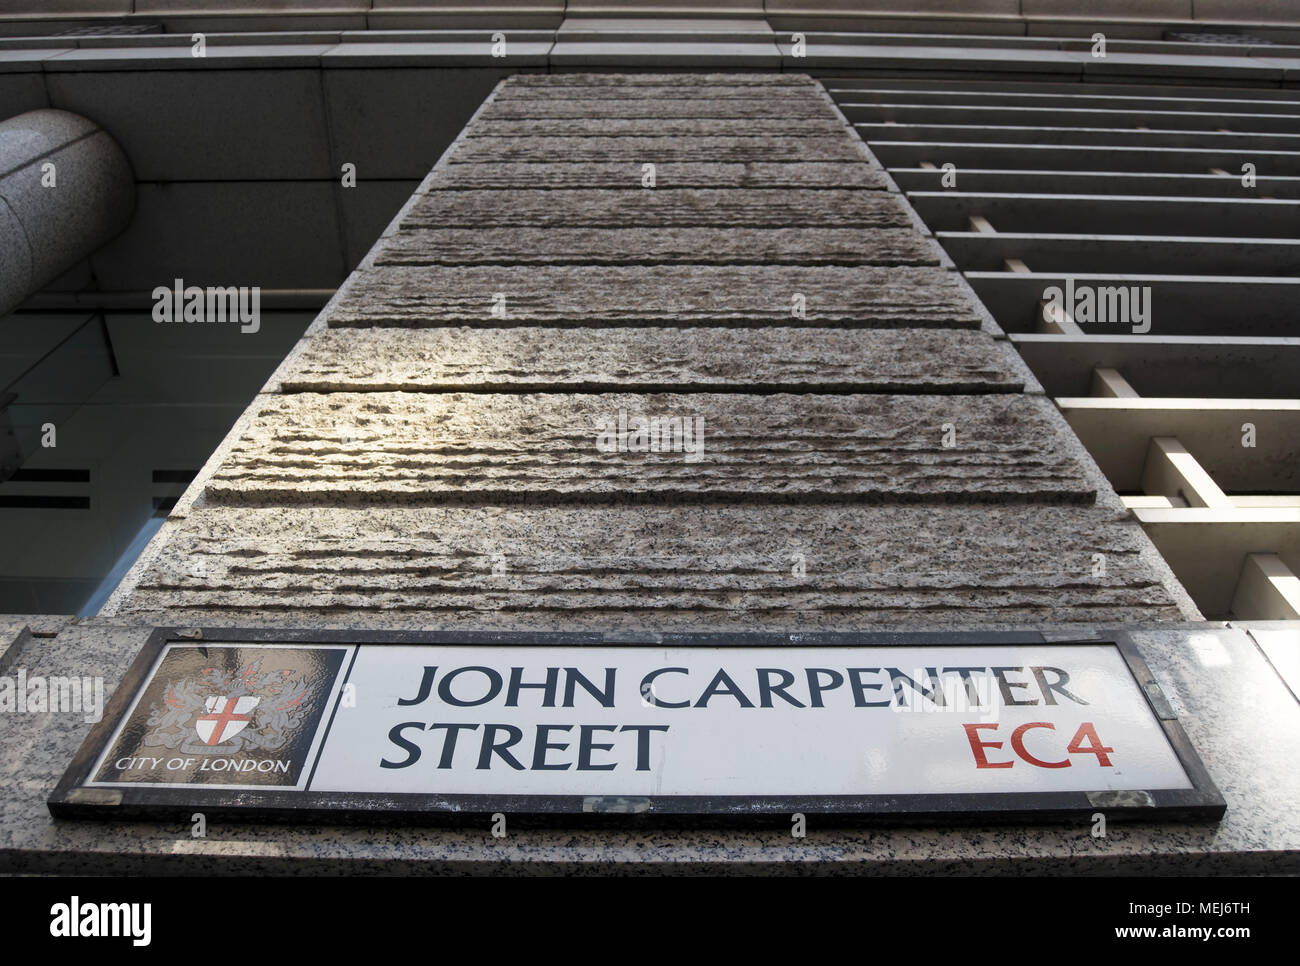 city of london street name sign for john carpenter street Stock Photo